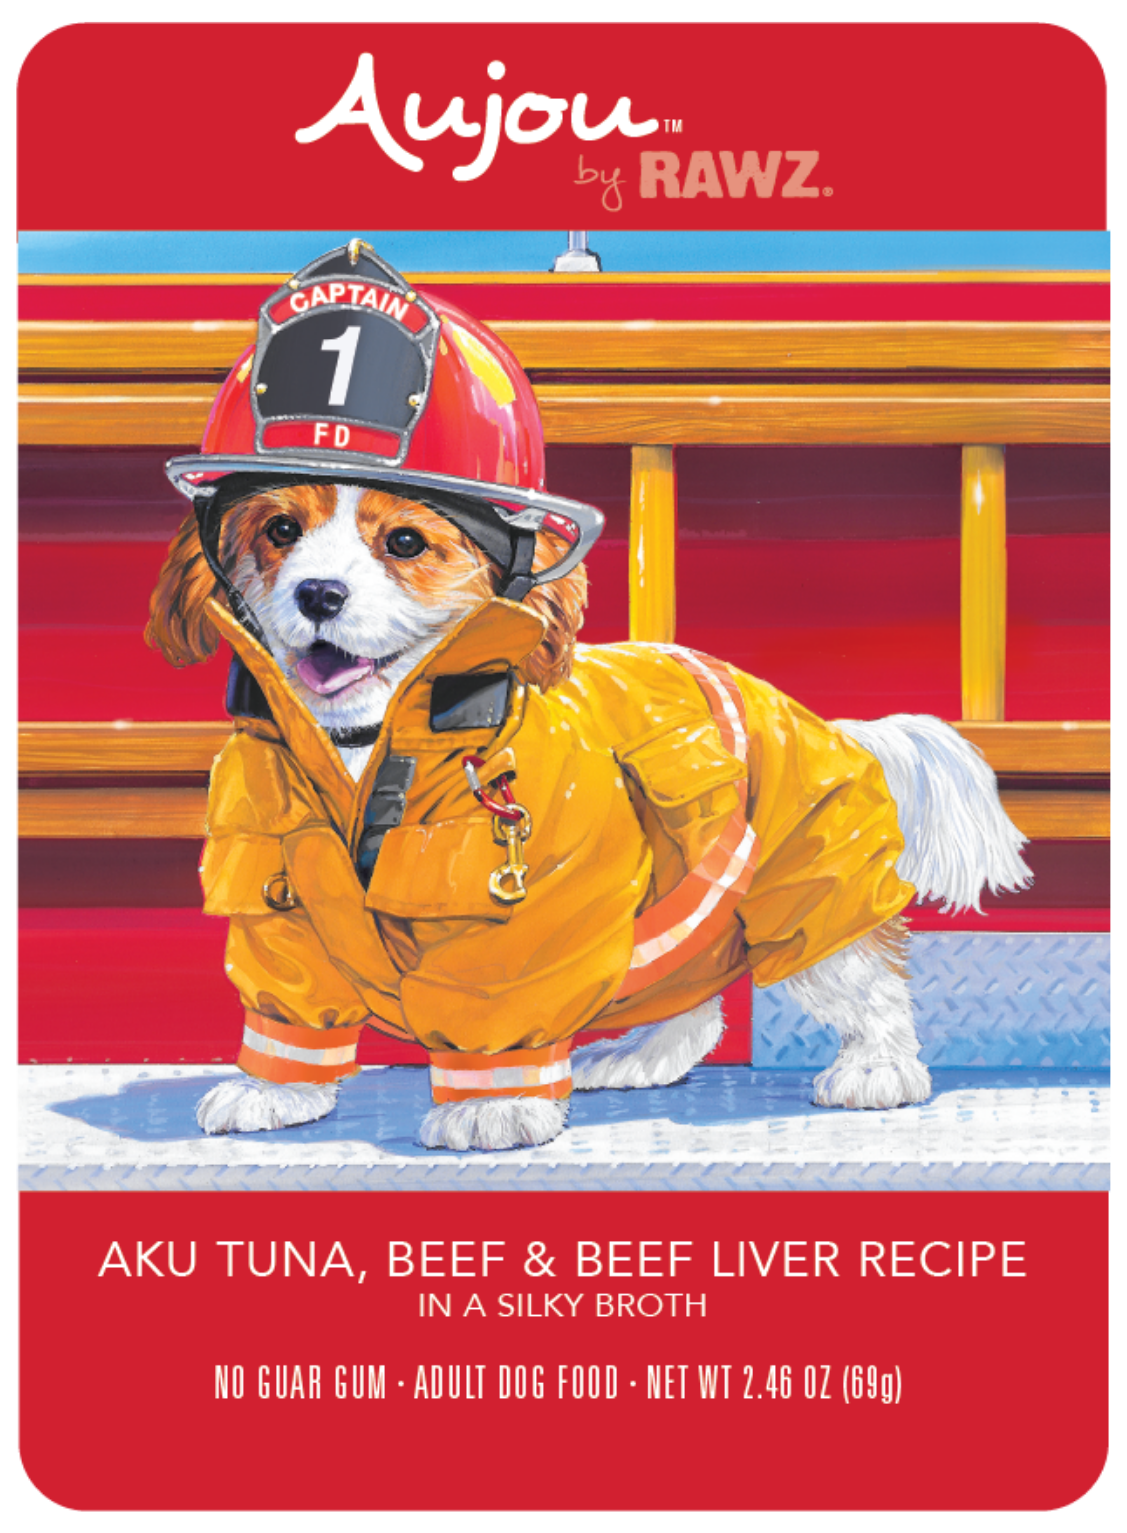 RAWZ Aujou Shreds Salmon, Beef & Aku Tuna Dog Pouch 2.46 oz.